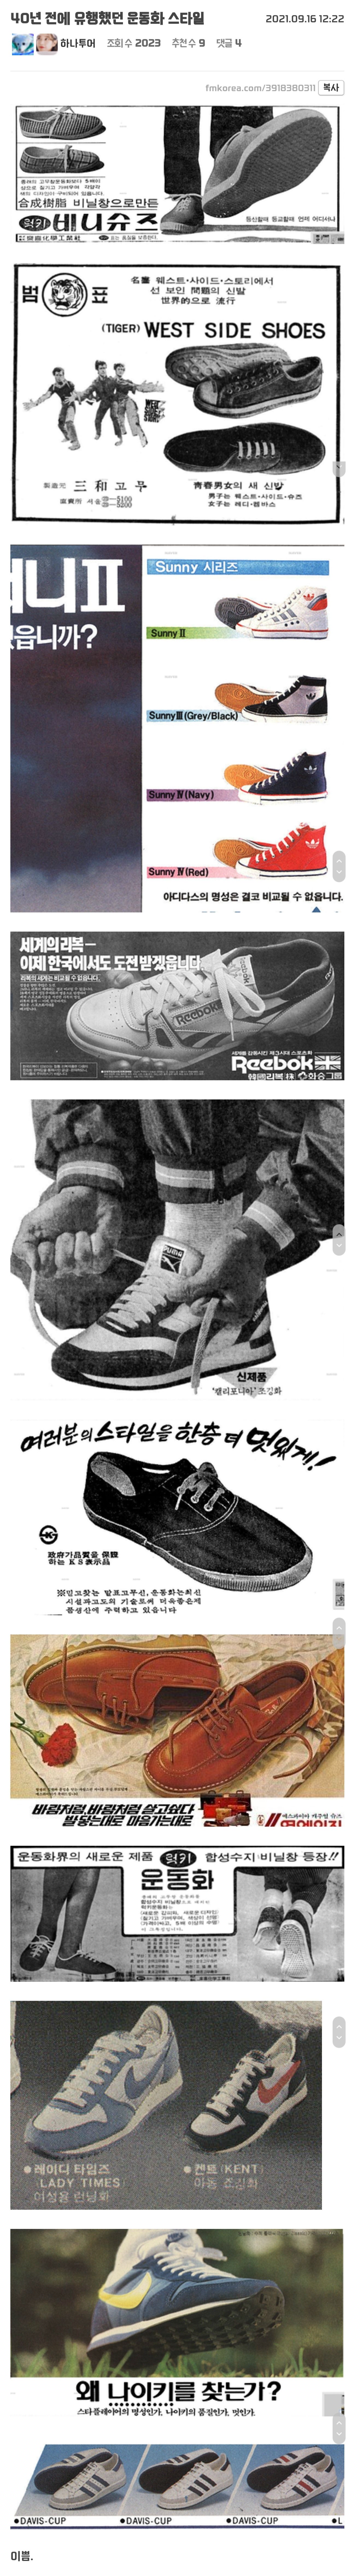 Sneakers that were popular 40 years ago.jpg